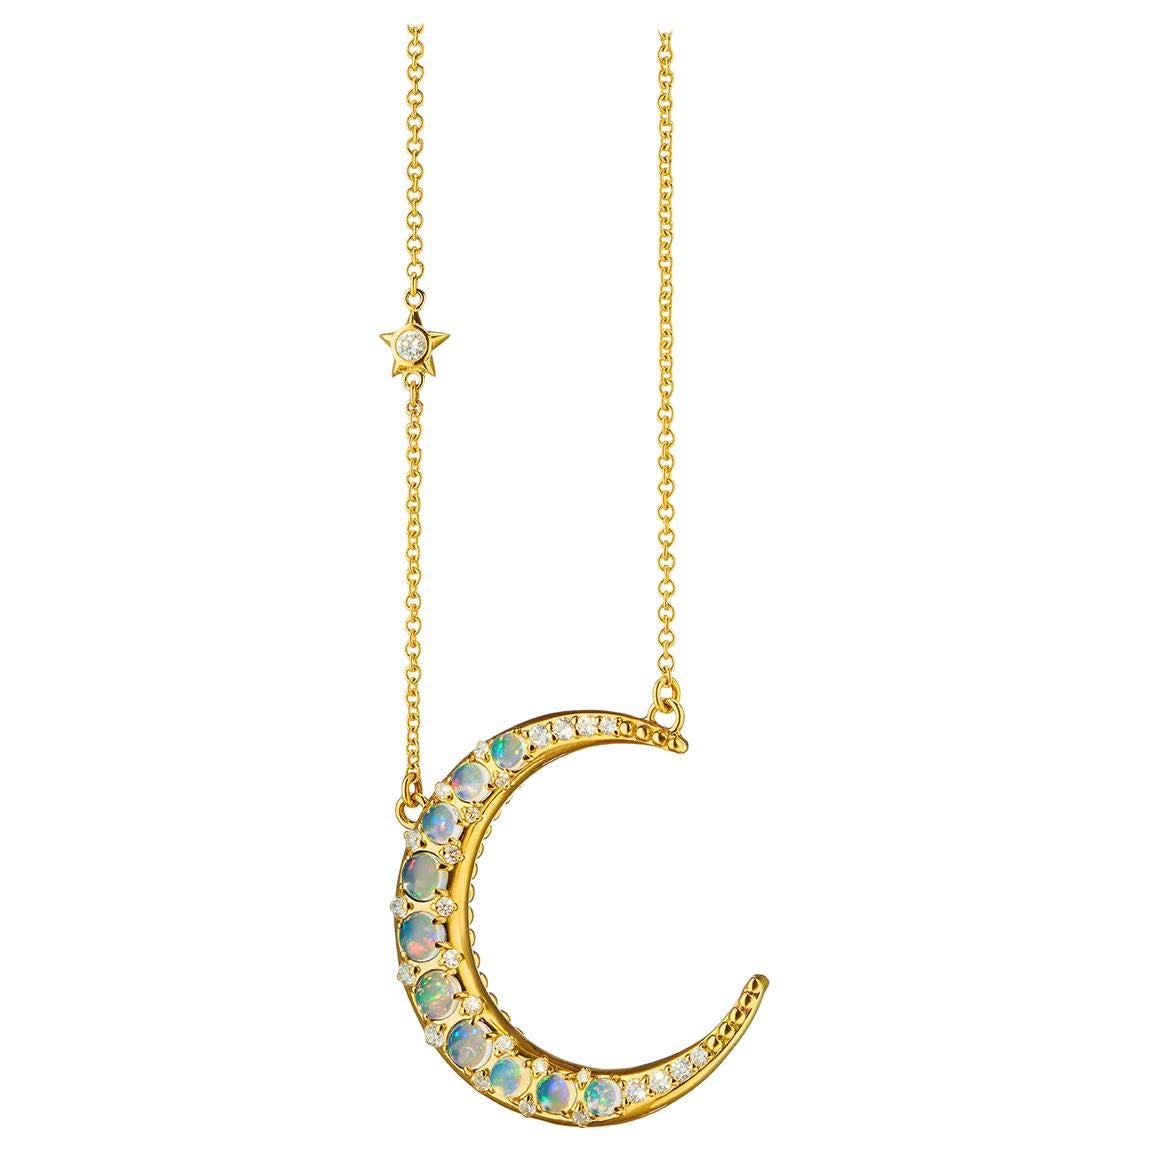 Monica Rich Kosann, Halbmond-Halskette, 18 Karat YG Sonne, Mond und Sterne, Wasseropal, Mondsichel